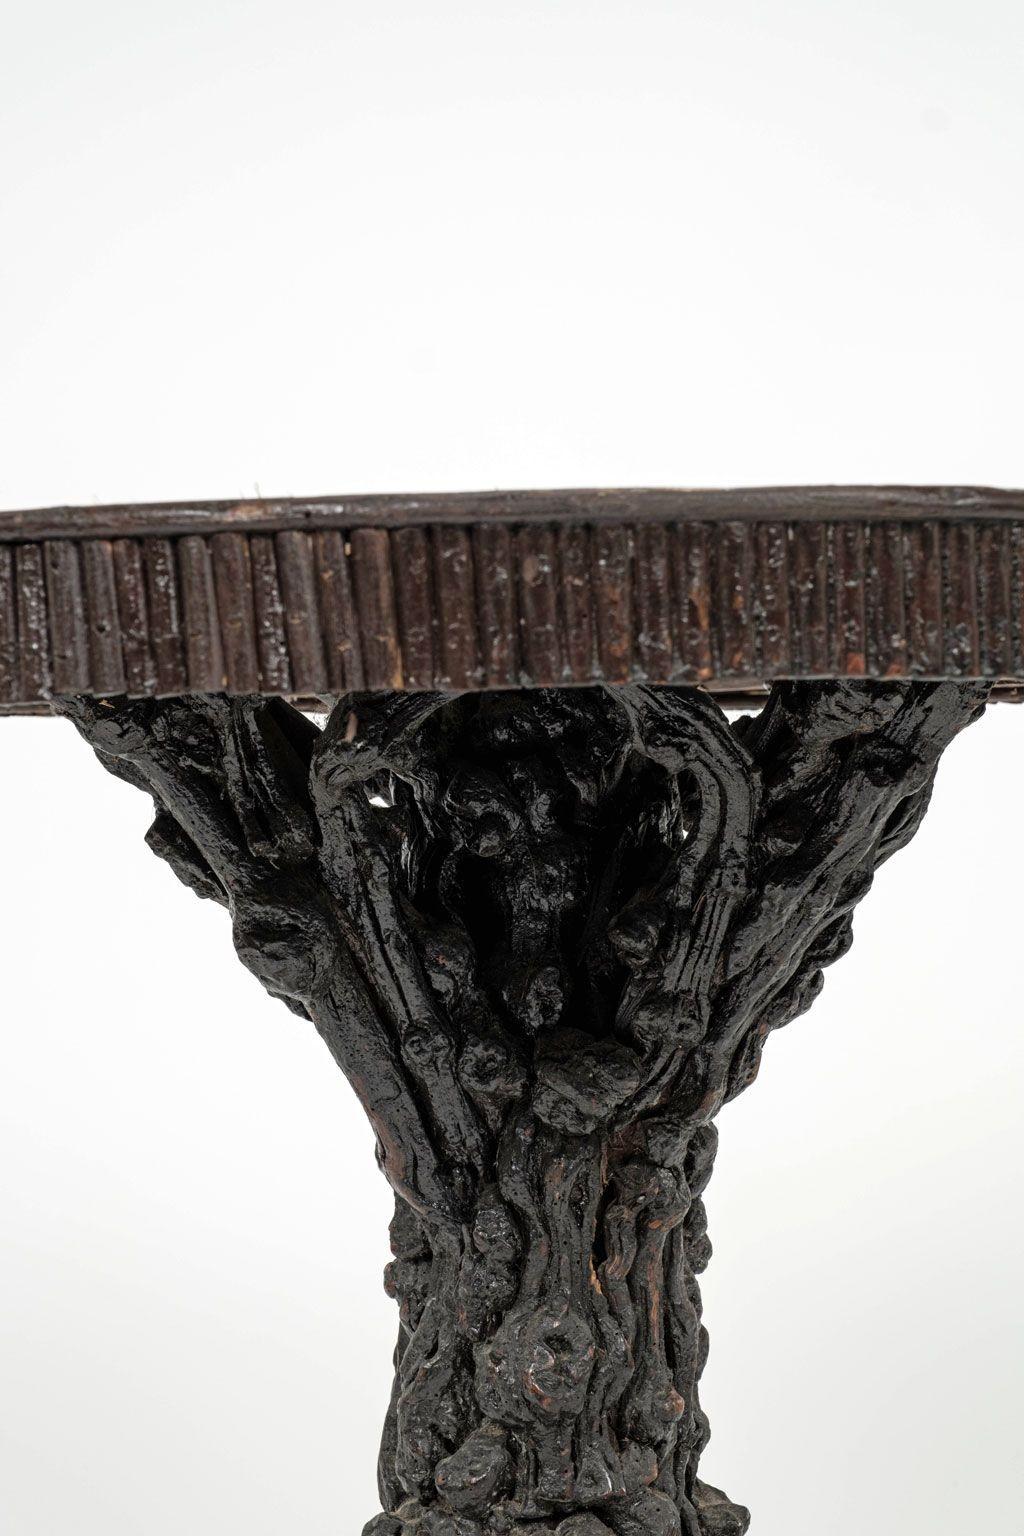 Guéridon rustique d'art populaire fabriqué à la main vers 1880-1910 en France. Cette table centrale d'art populaire est composée d'éléments naturels à la texture rugueuse. Une base en bois de racines noueuses soutient un plateau rond de taille